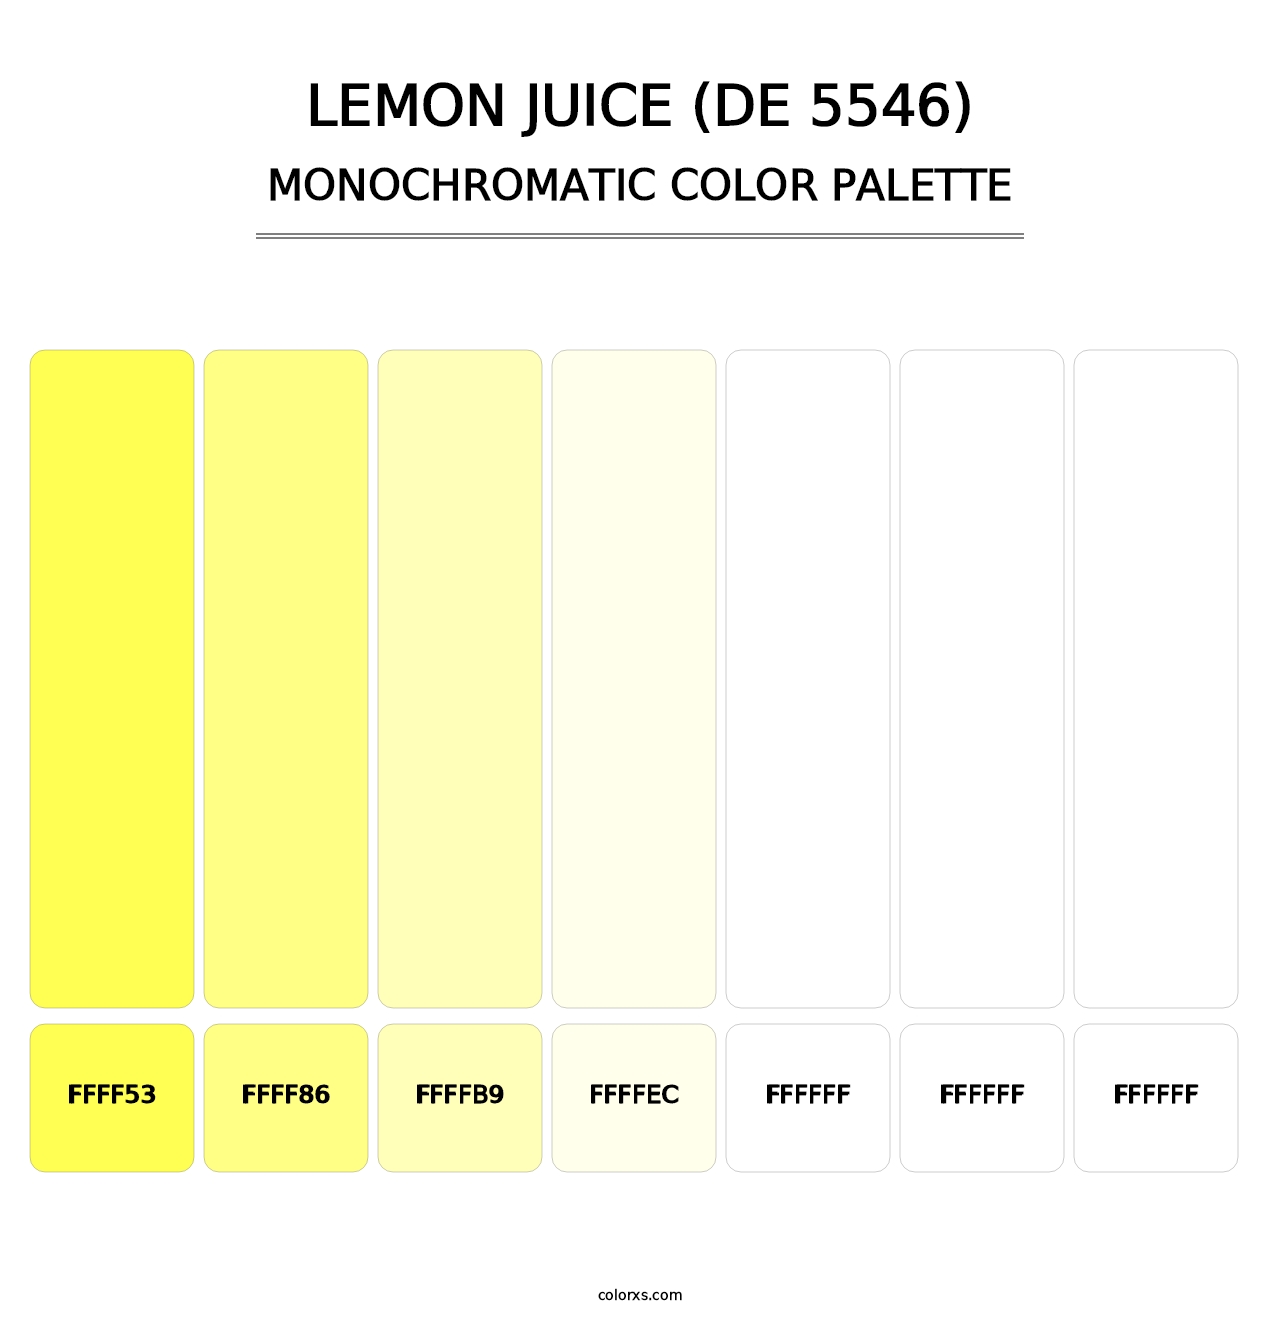 Lemon Juice (DE 5546) - Monochromatic Color Palette